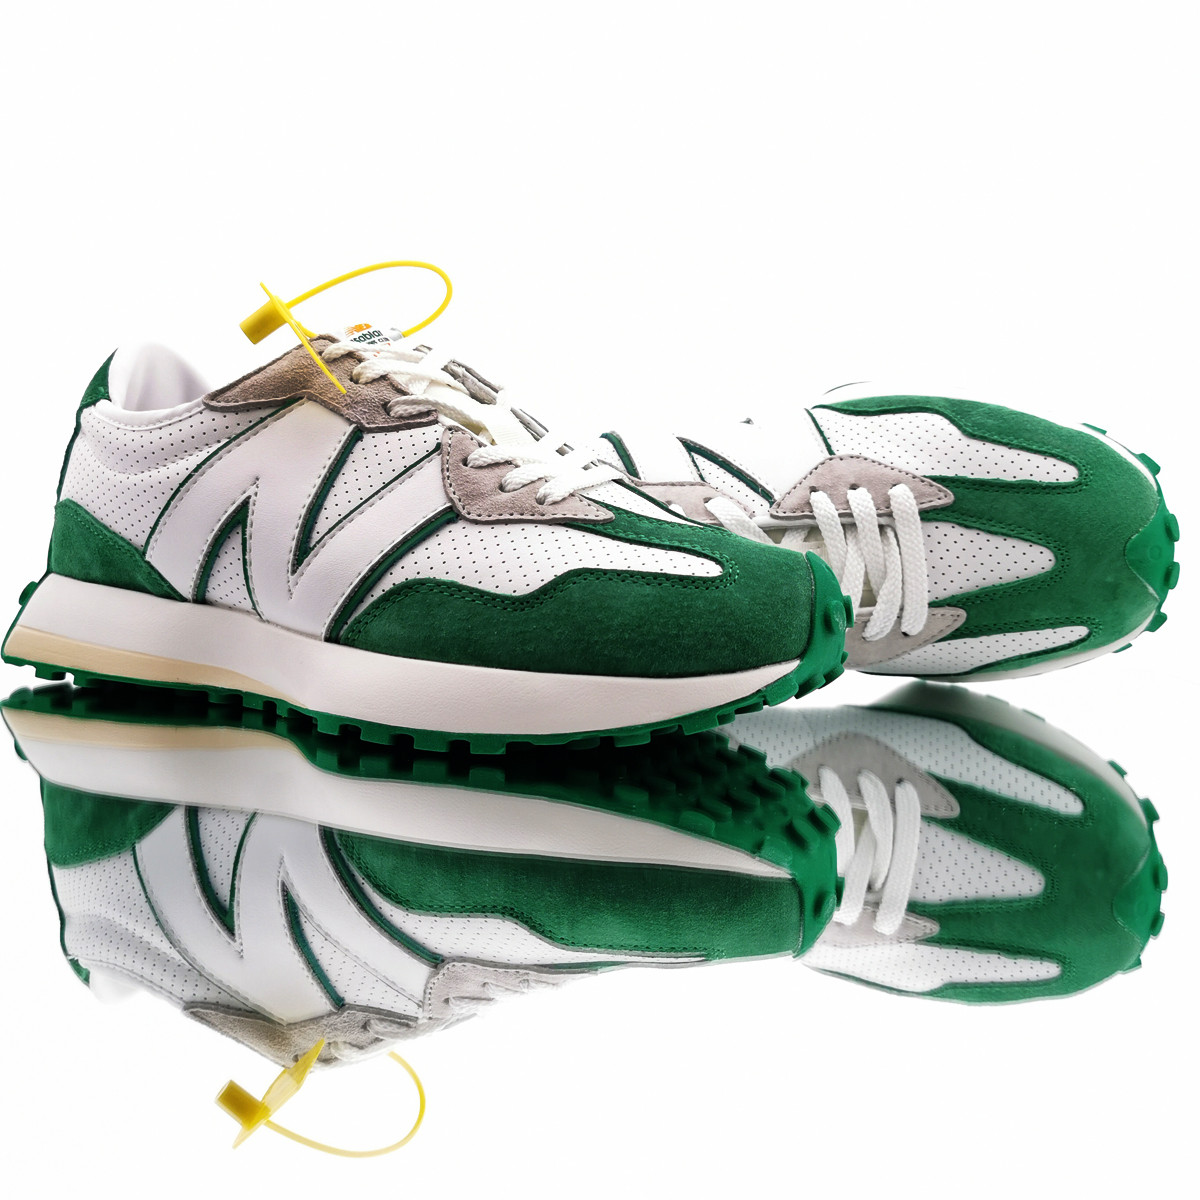 

Мужские кроссовки в стиле New Balance 327 Casablanca, замша, текстиль, белый с зеленым 41 (26 см)